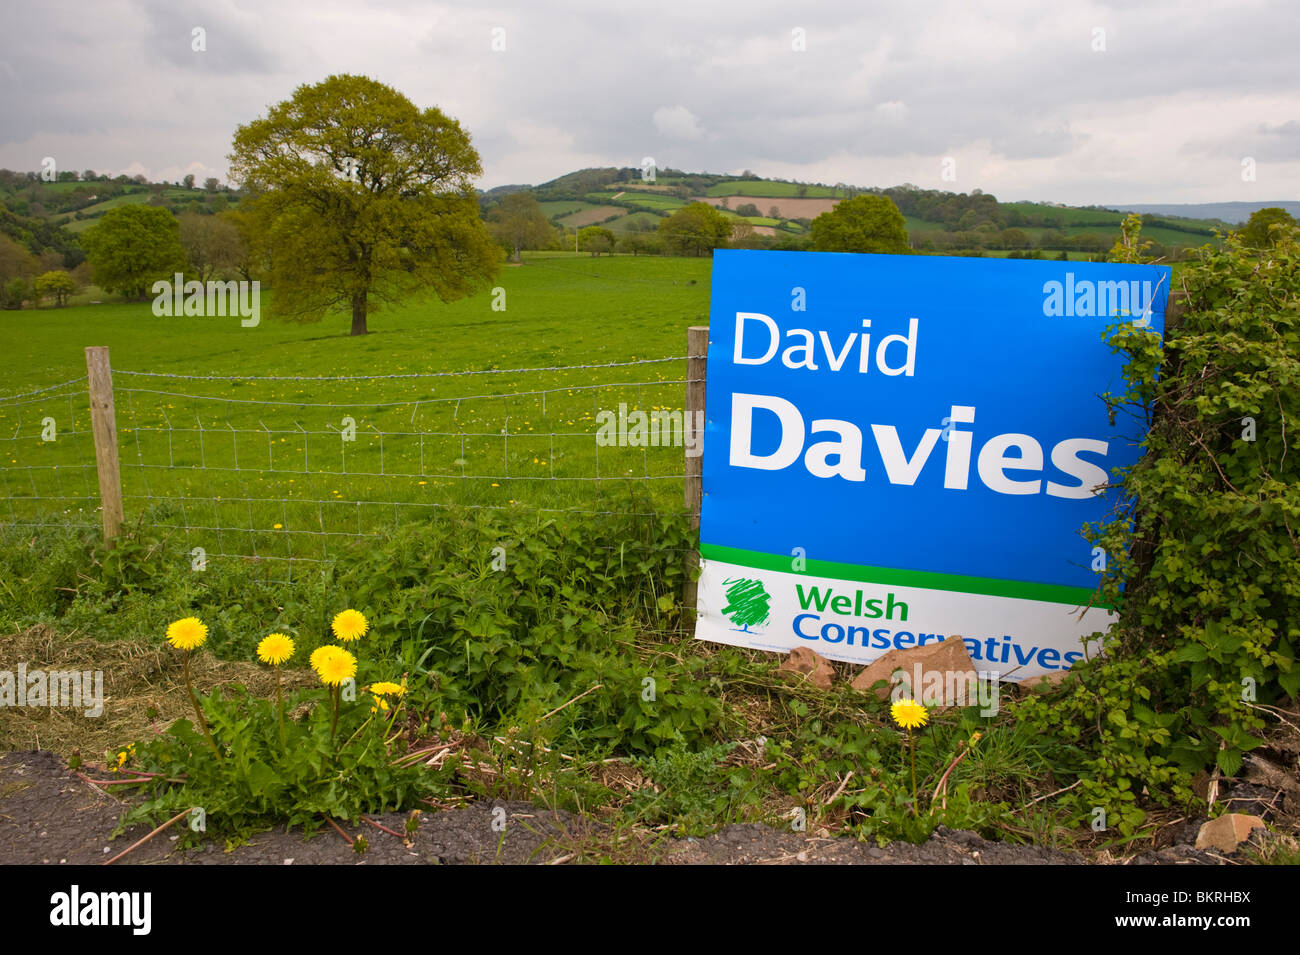 Campagna elettorale segno per il gallese conservatori David Davies nel rurale Monmouth circoscrizione in Monmouthshire South Wales UK Foto Stock